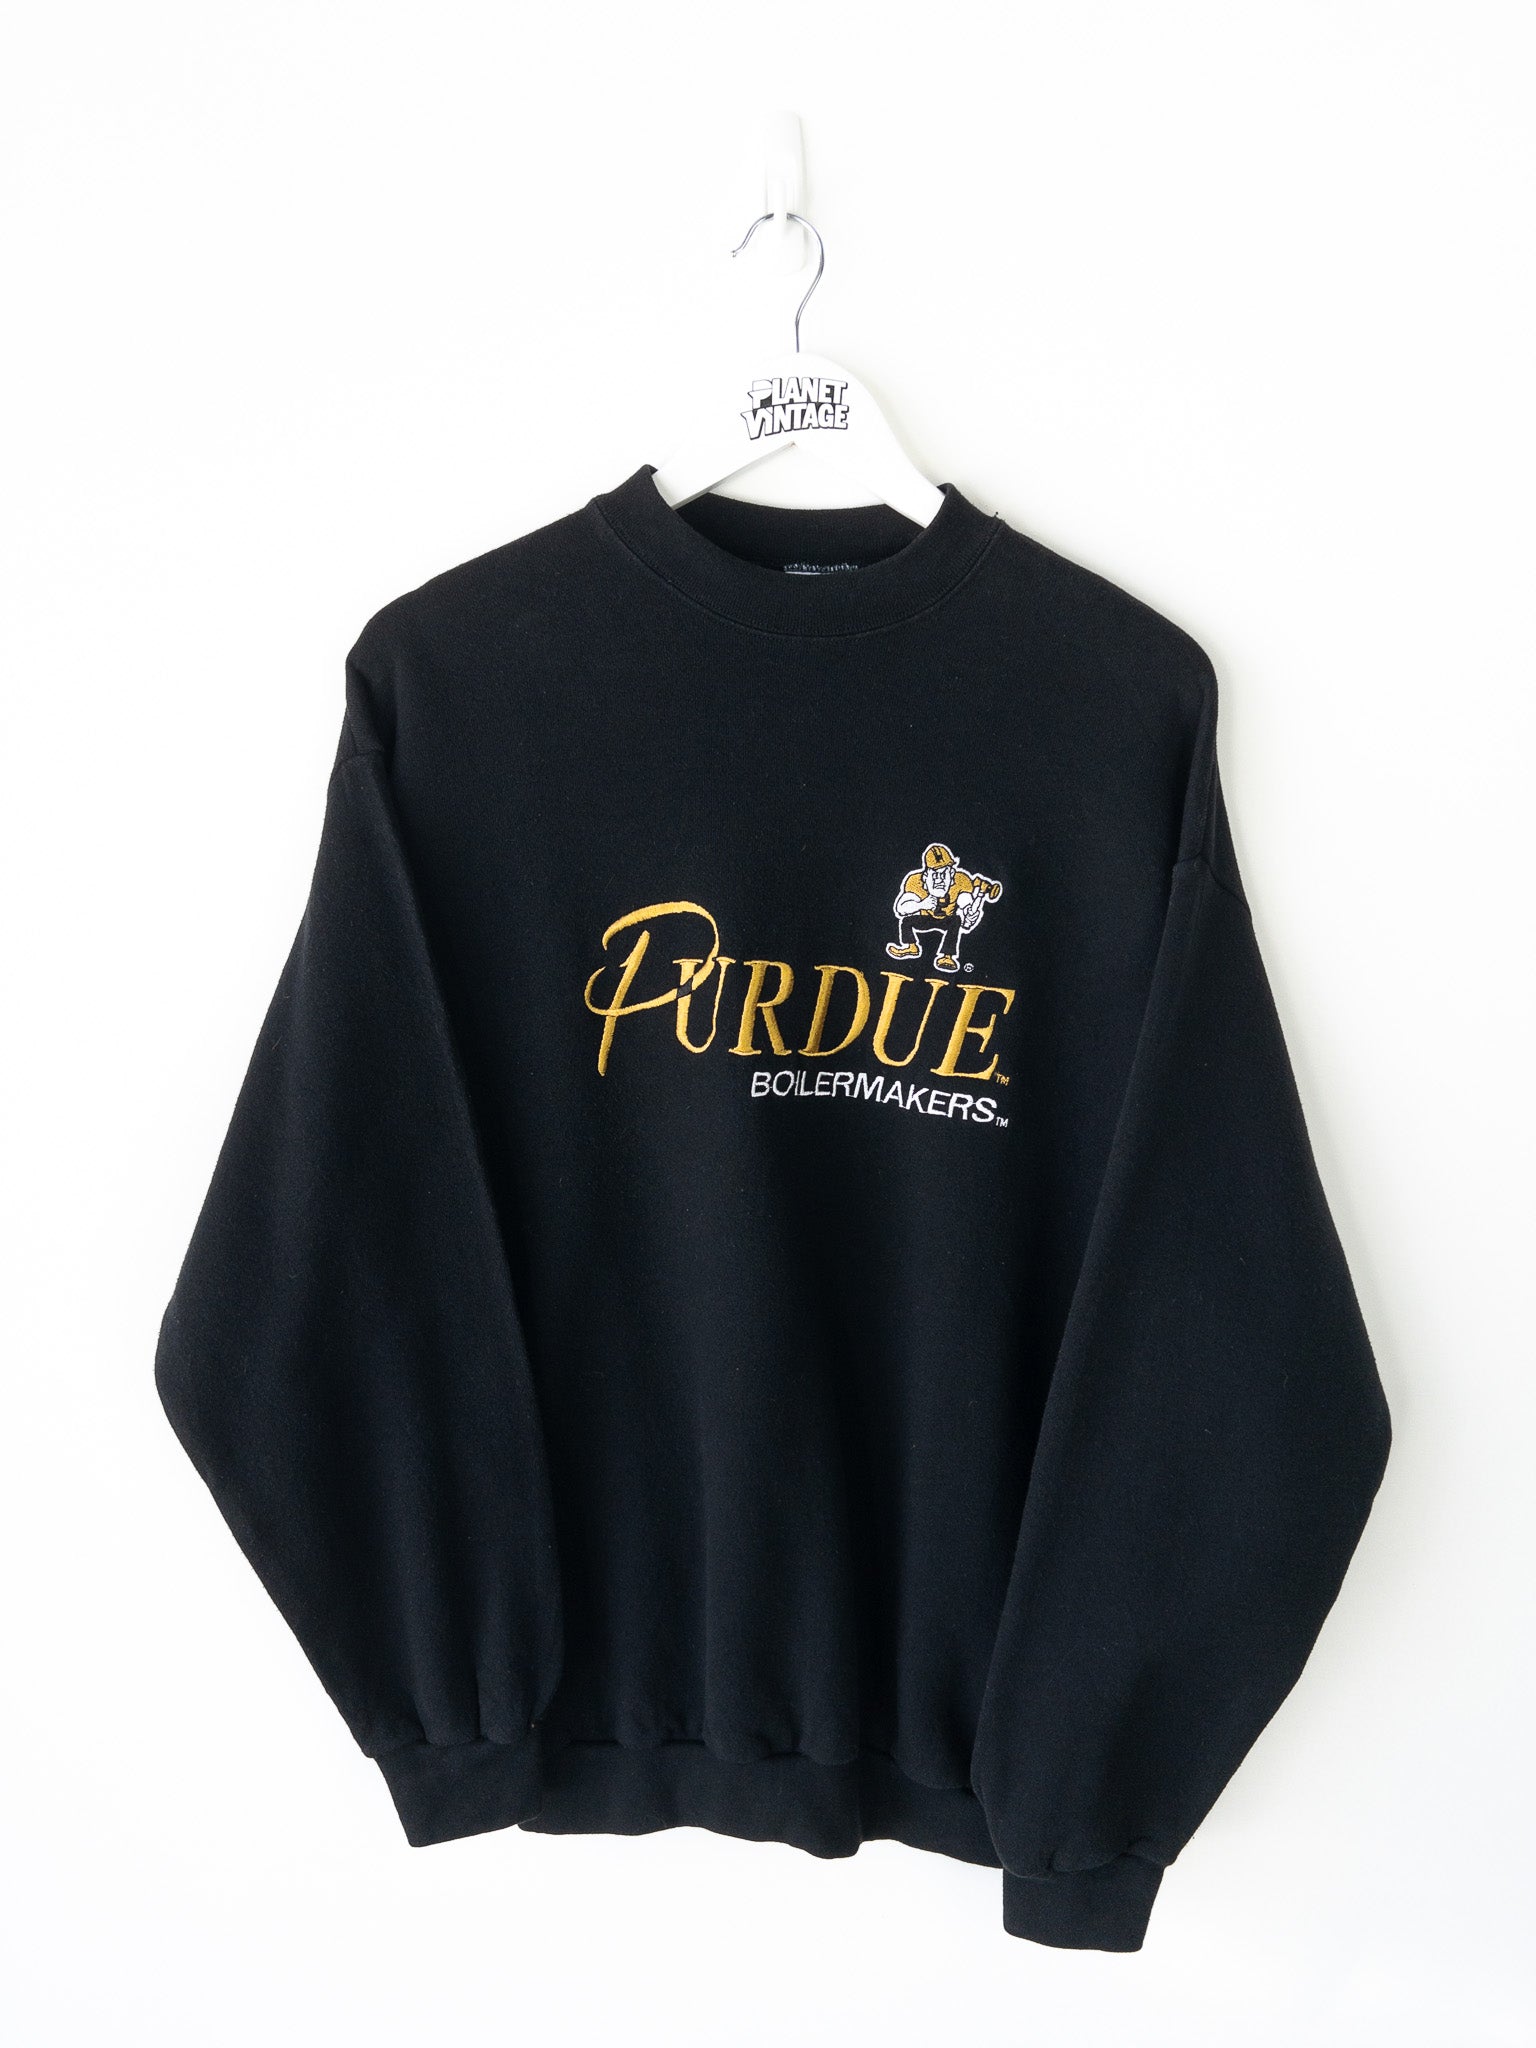 Vintage Purdue Boilermakers Sweatshirt (L)